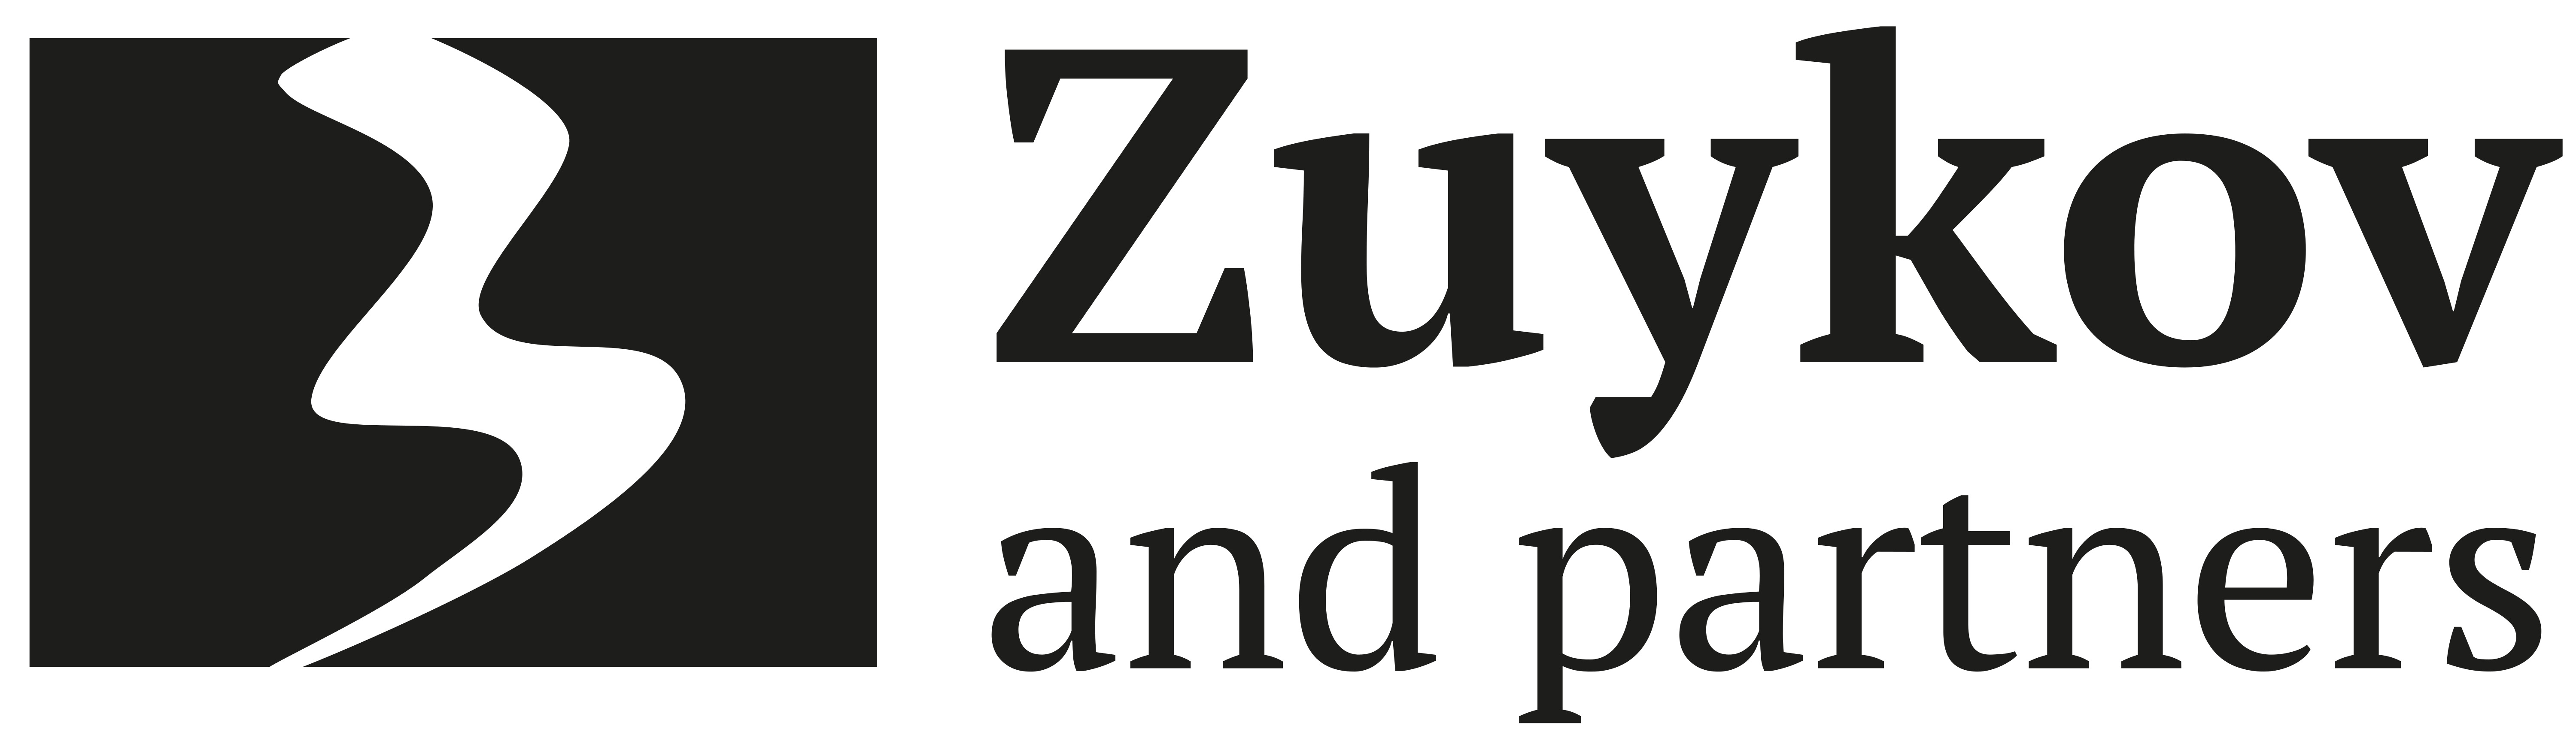 Zuykov and Partners LLC